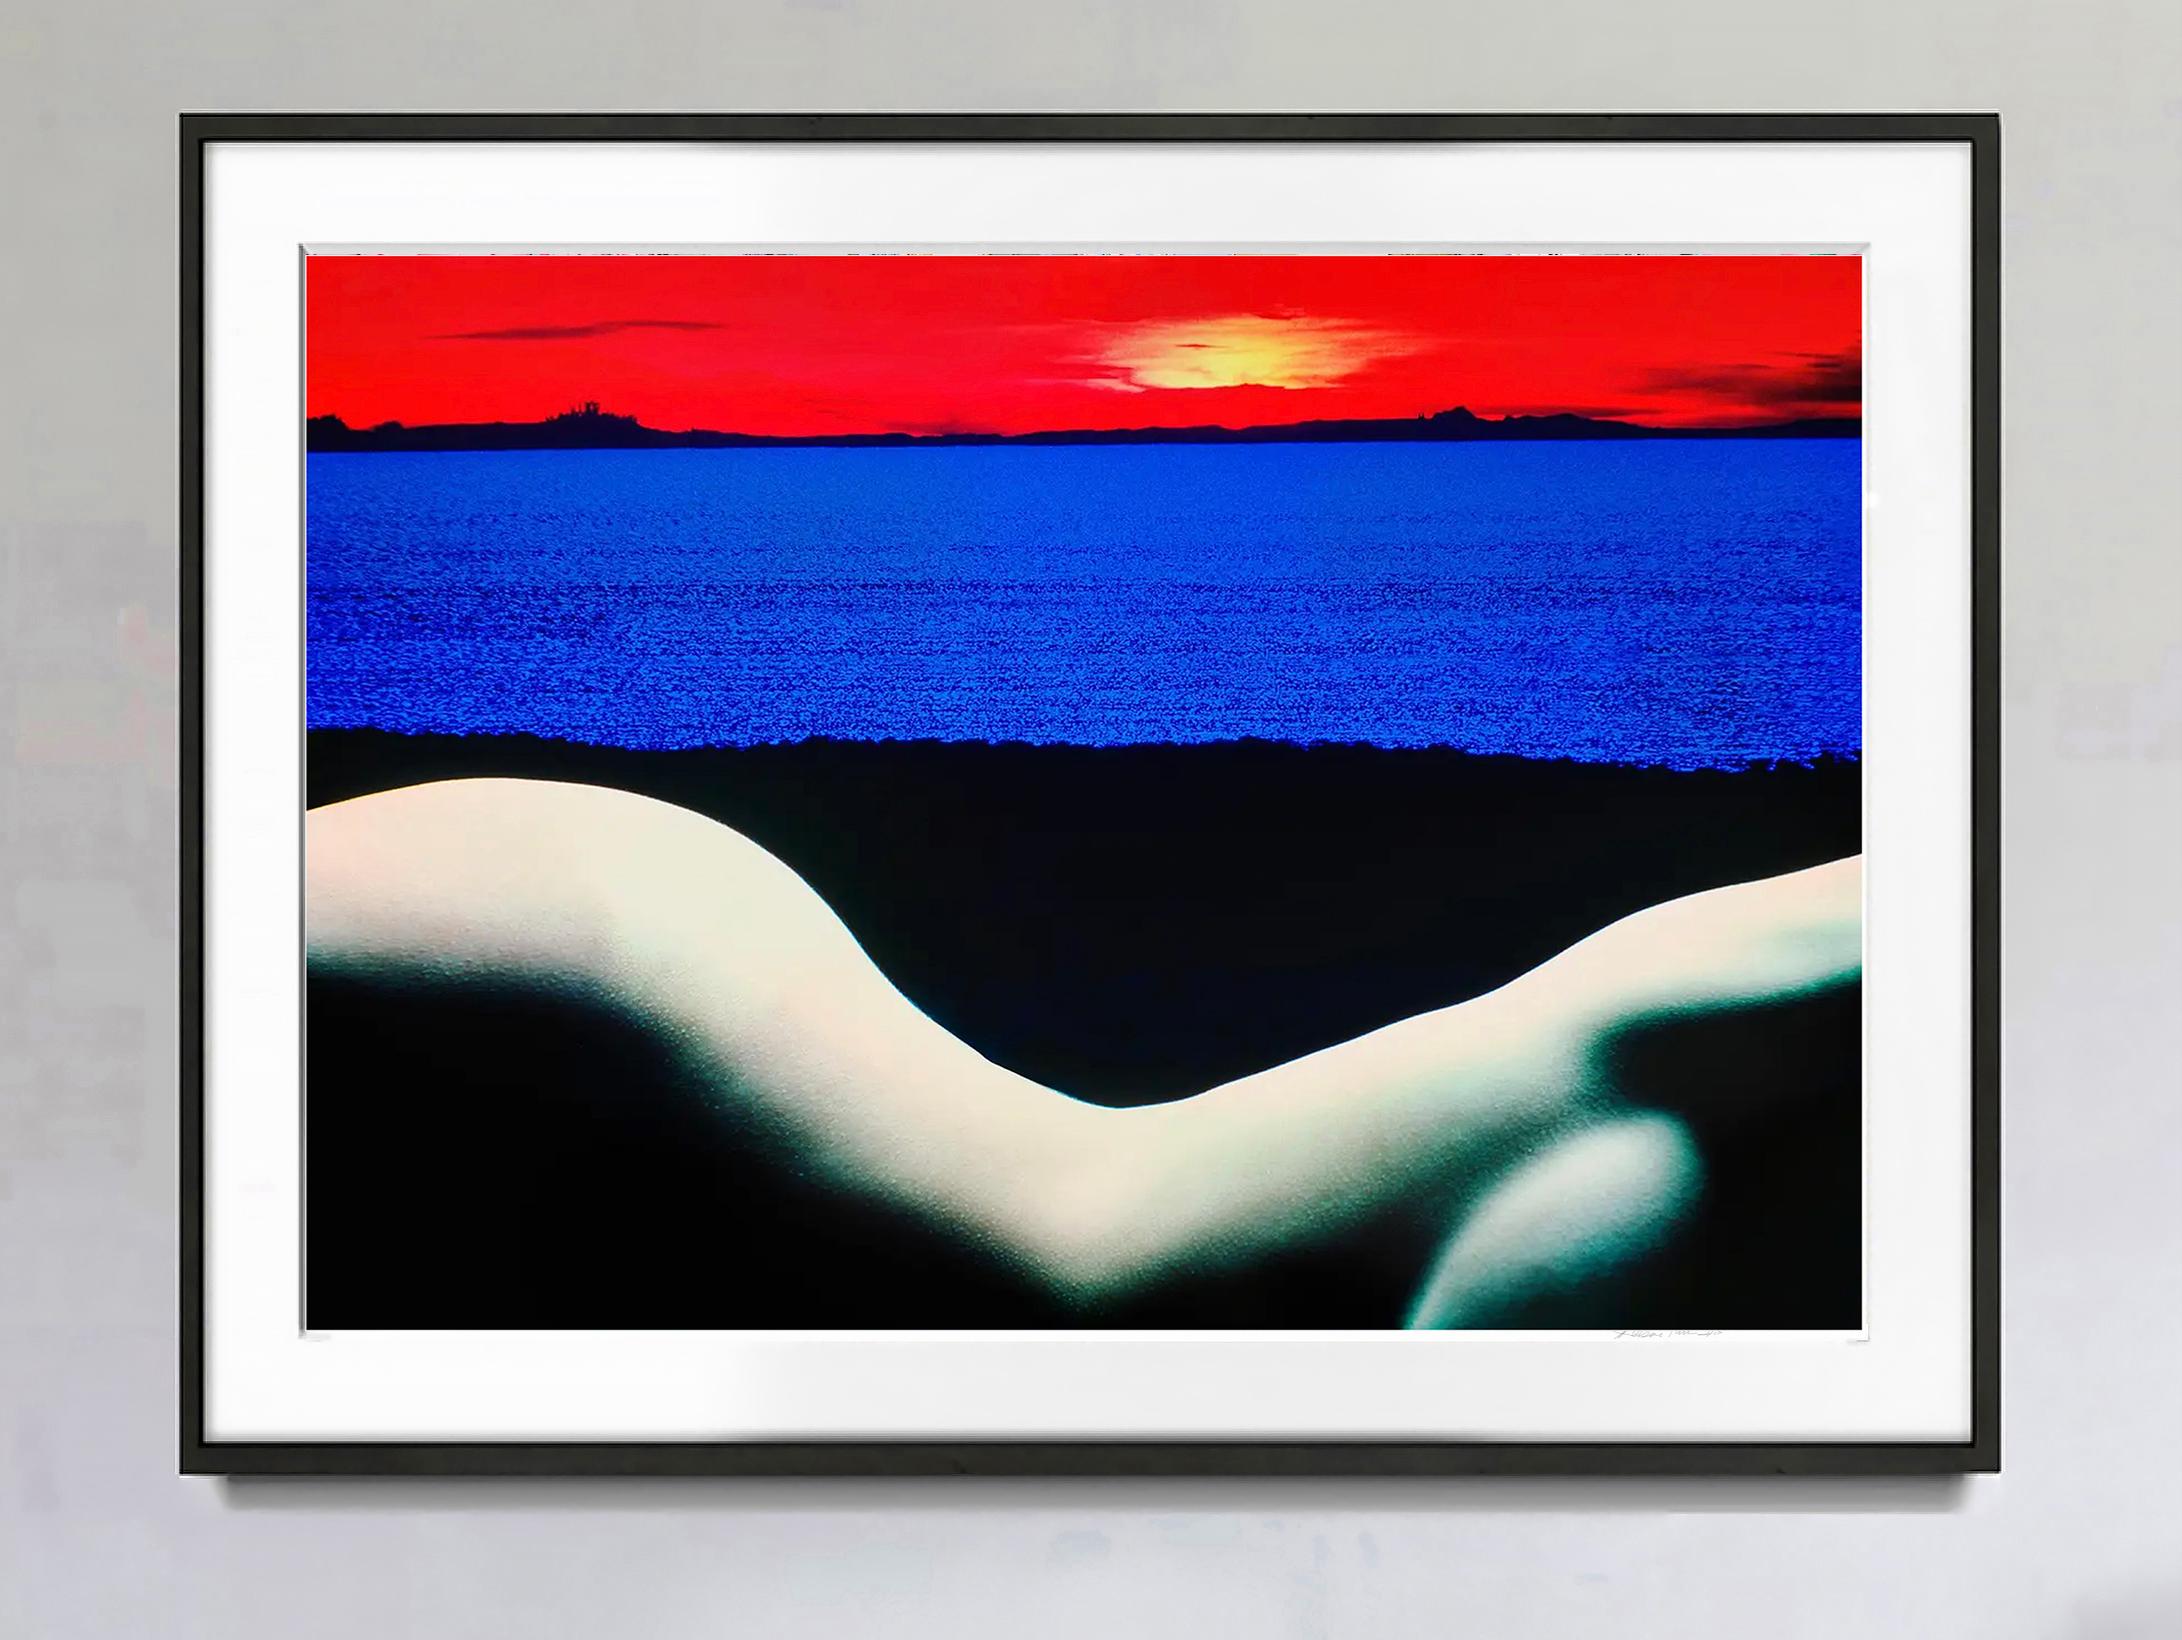 Kurvenreicher Akt in surrealer Landschaft in Rot und Blau – Albumcover (Surrealismus), Photograph, von Mitchell Funk